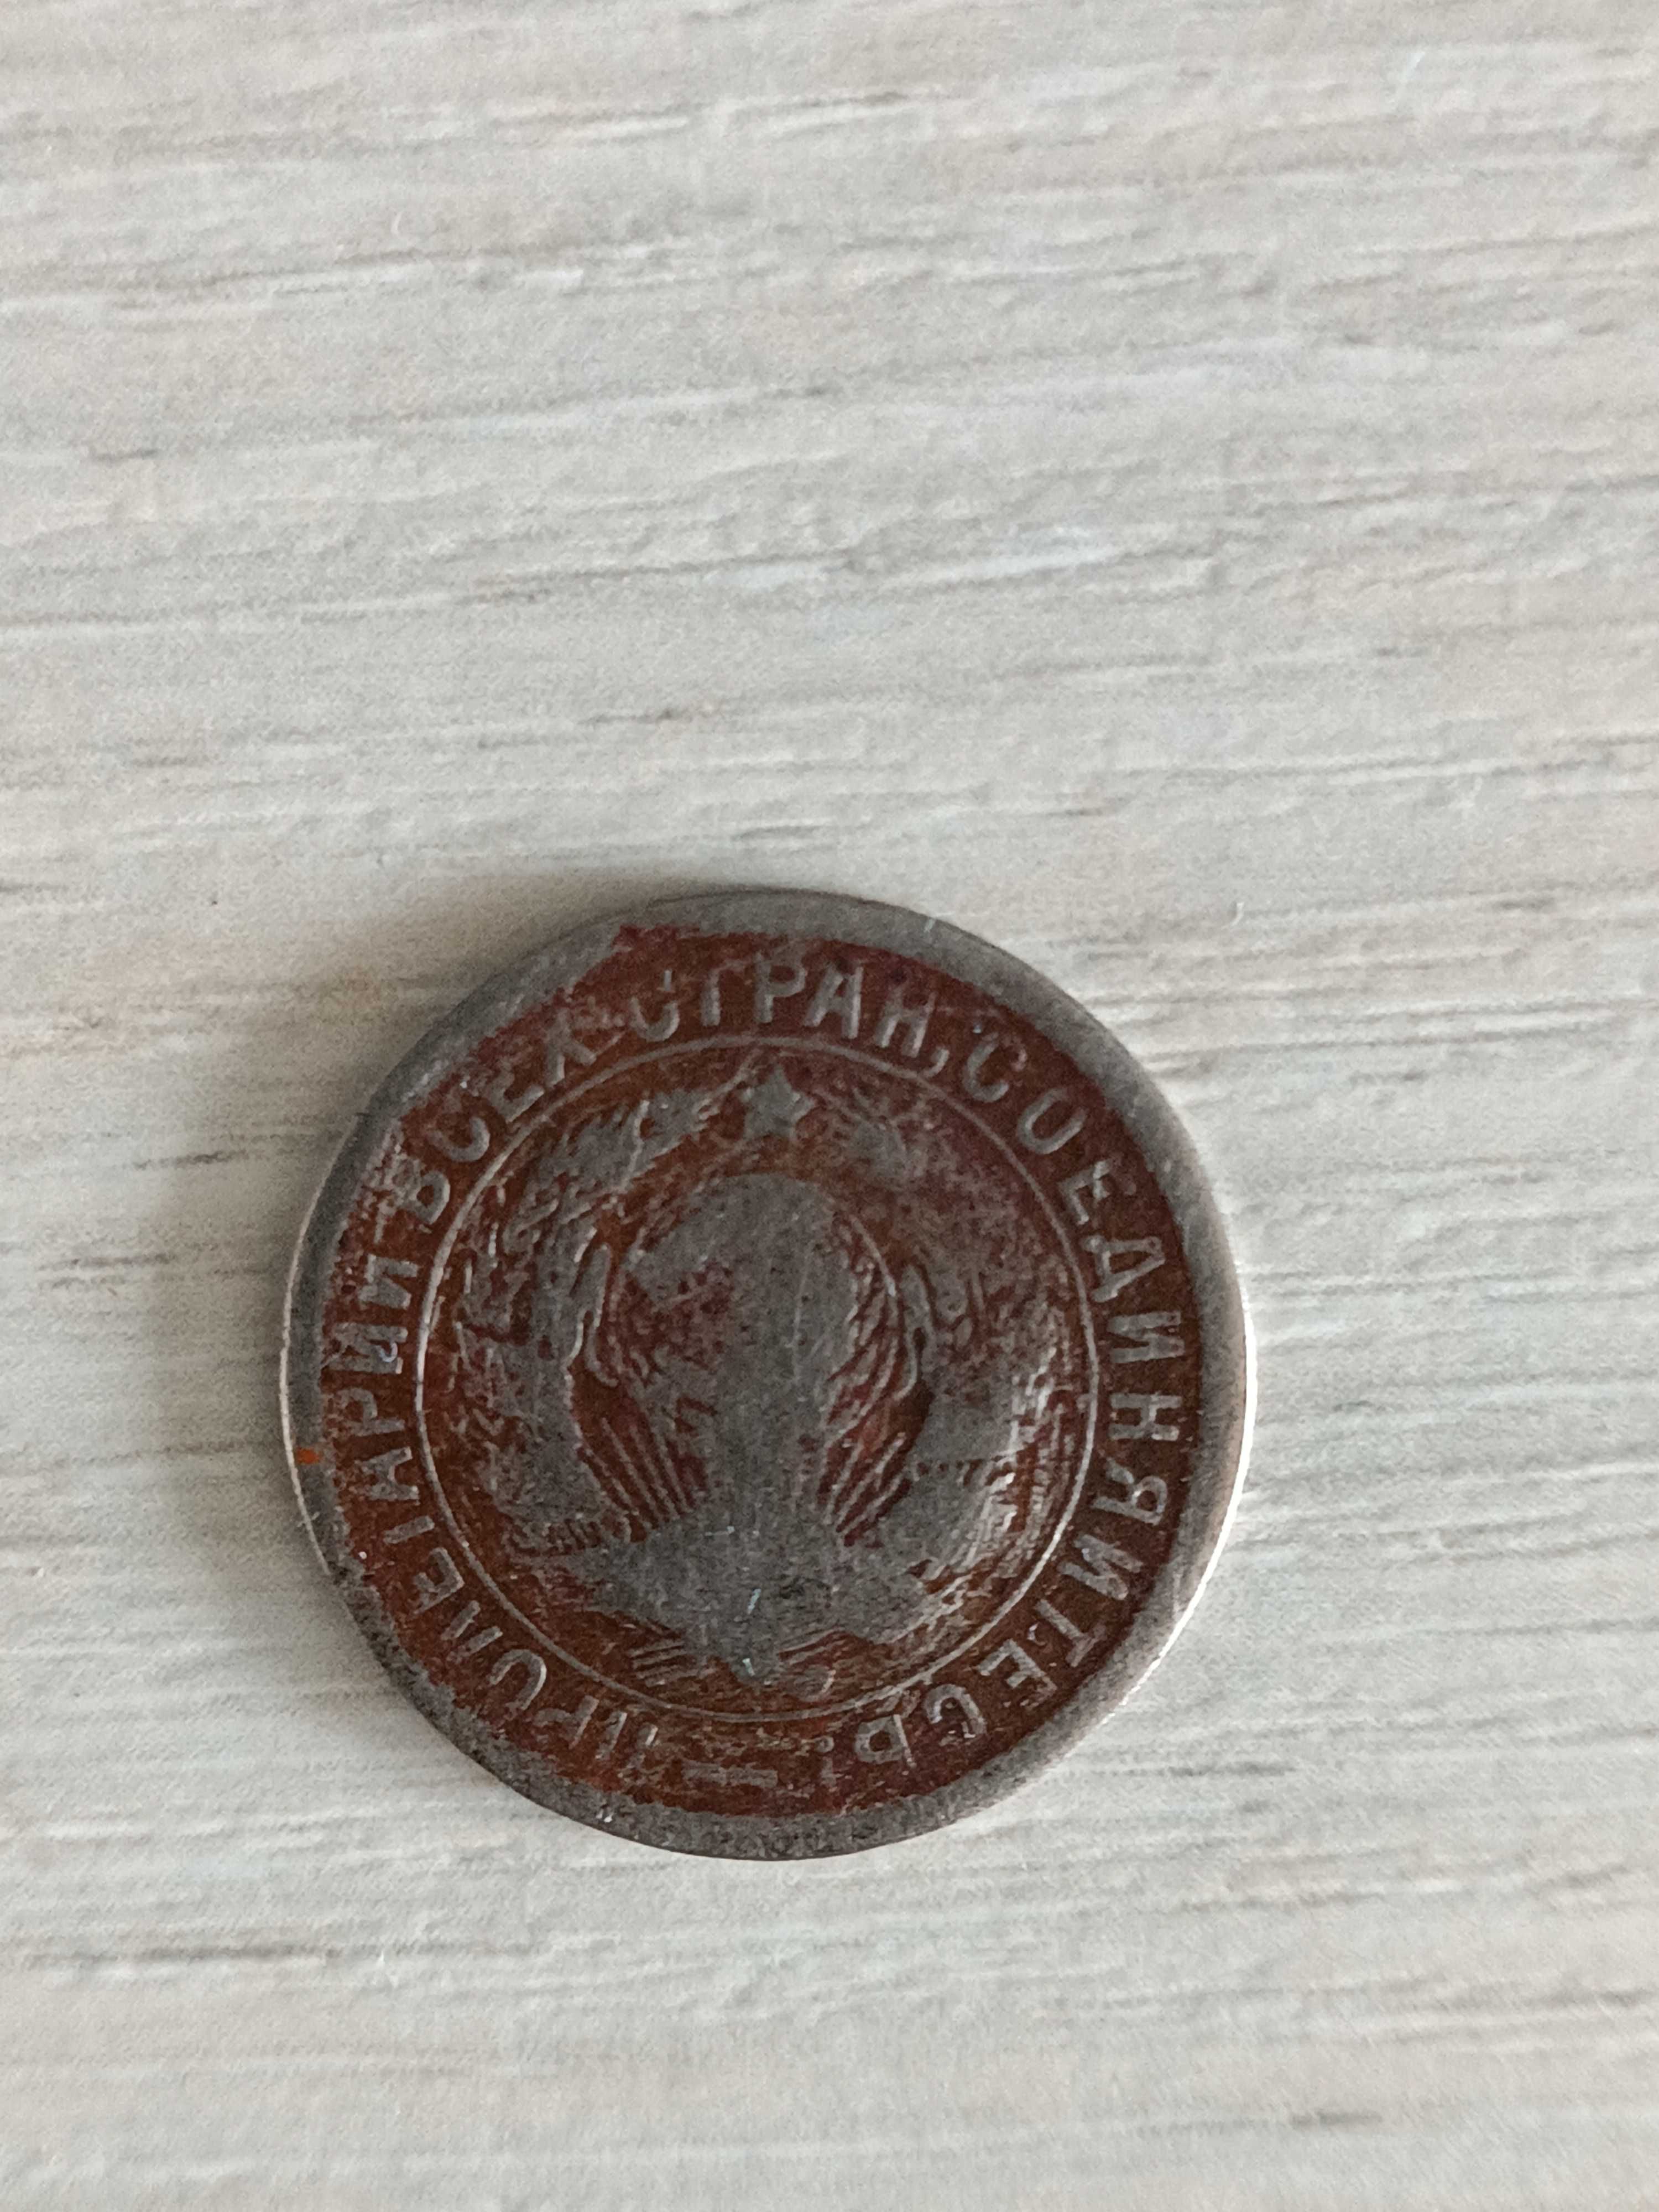 Монета 15коп.1934 год...